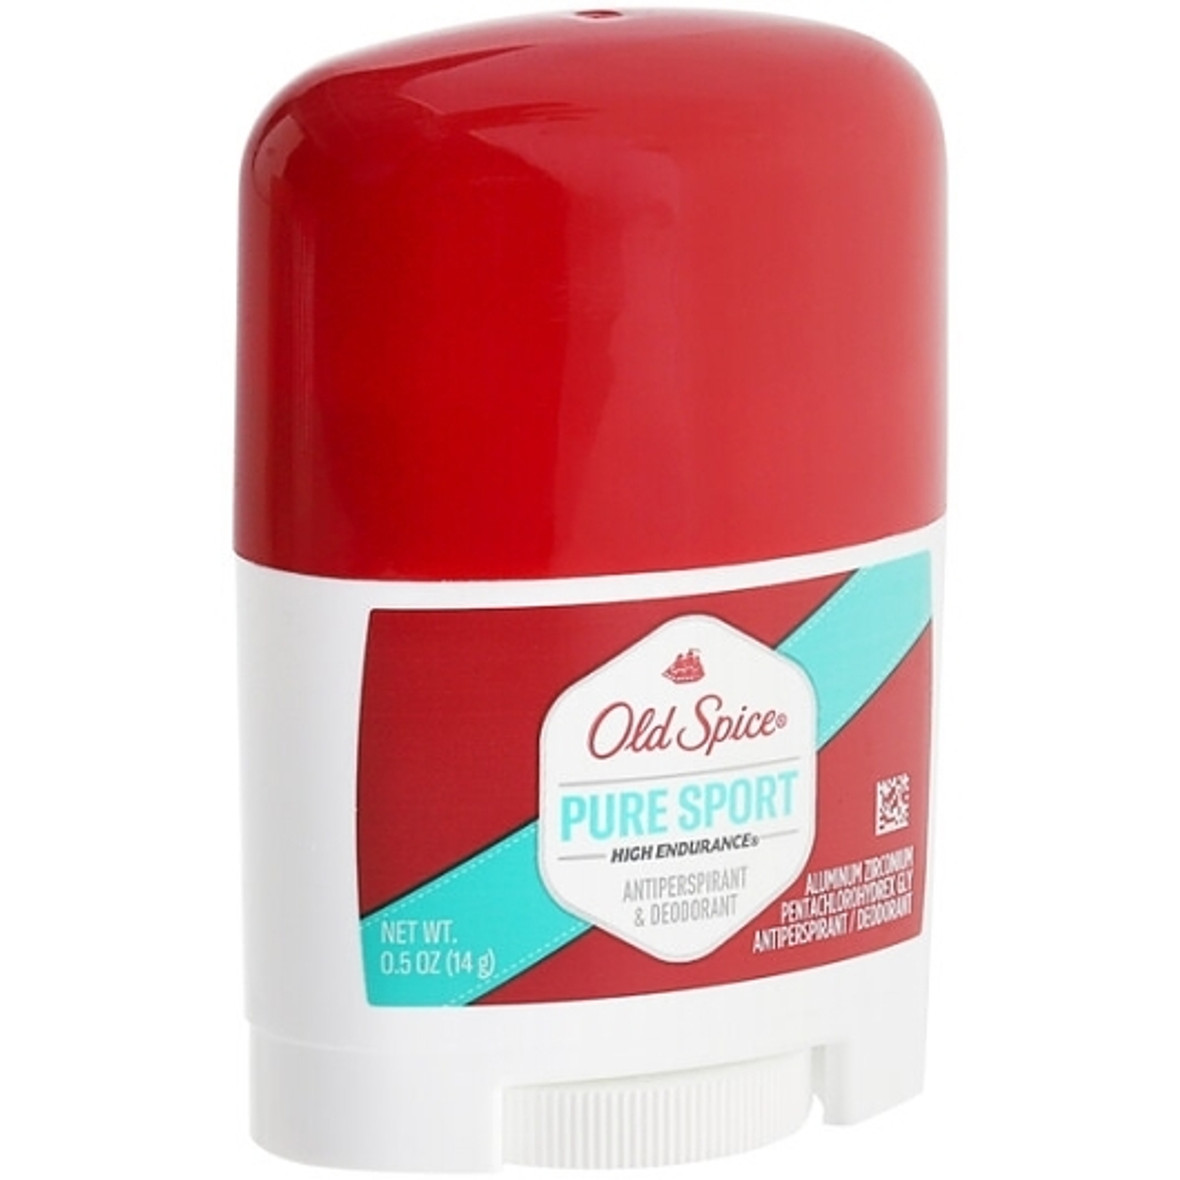 Old Spice Deodorant Invisible Solid Trial Size, 0.5 Ounce, 6 Per Box, 4 Per Case